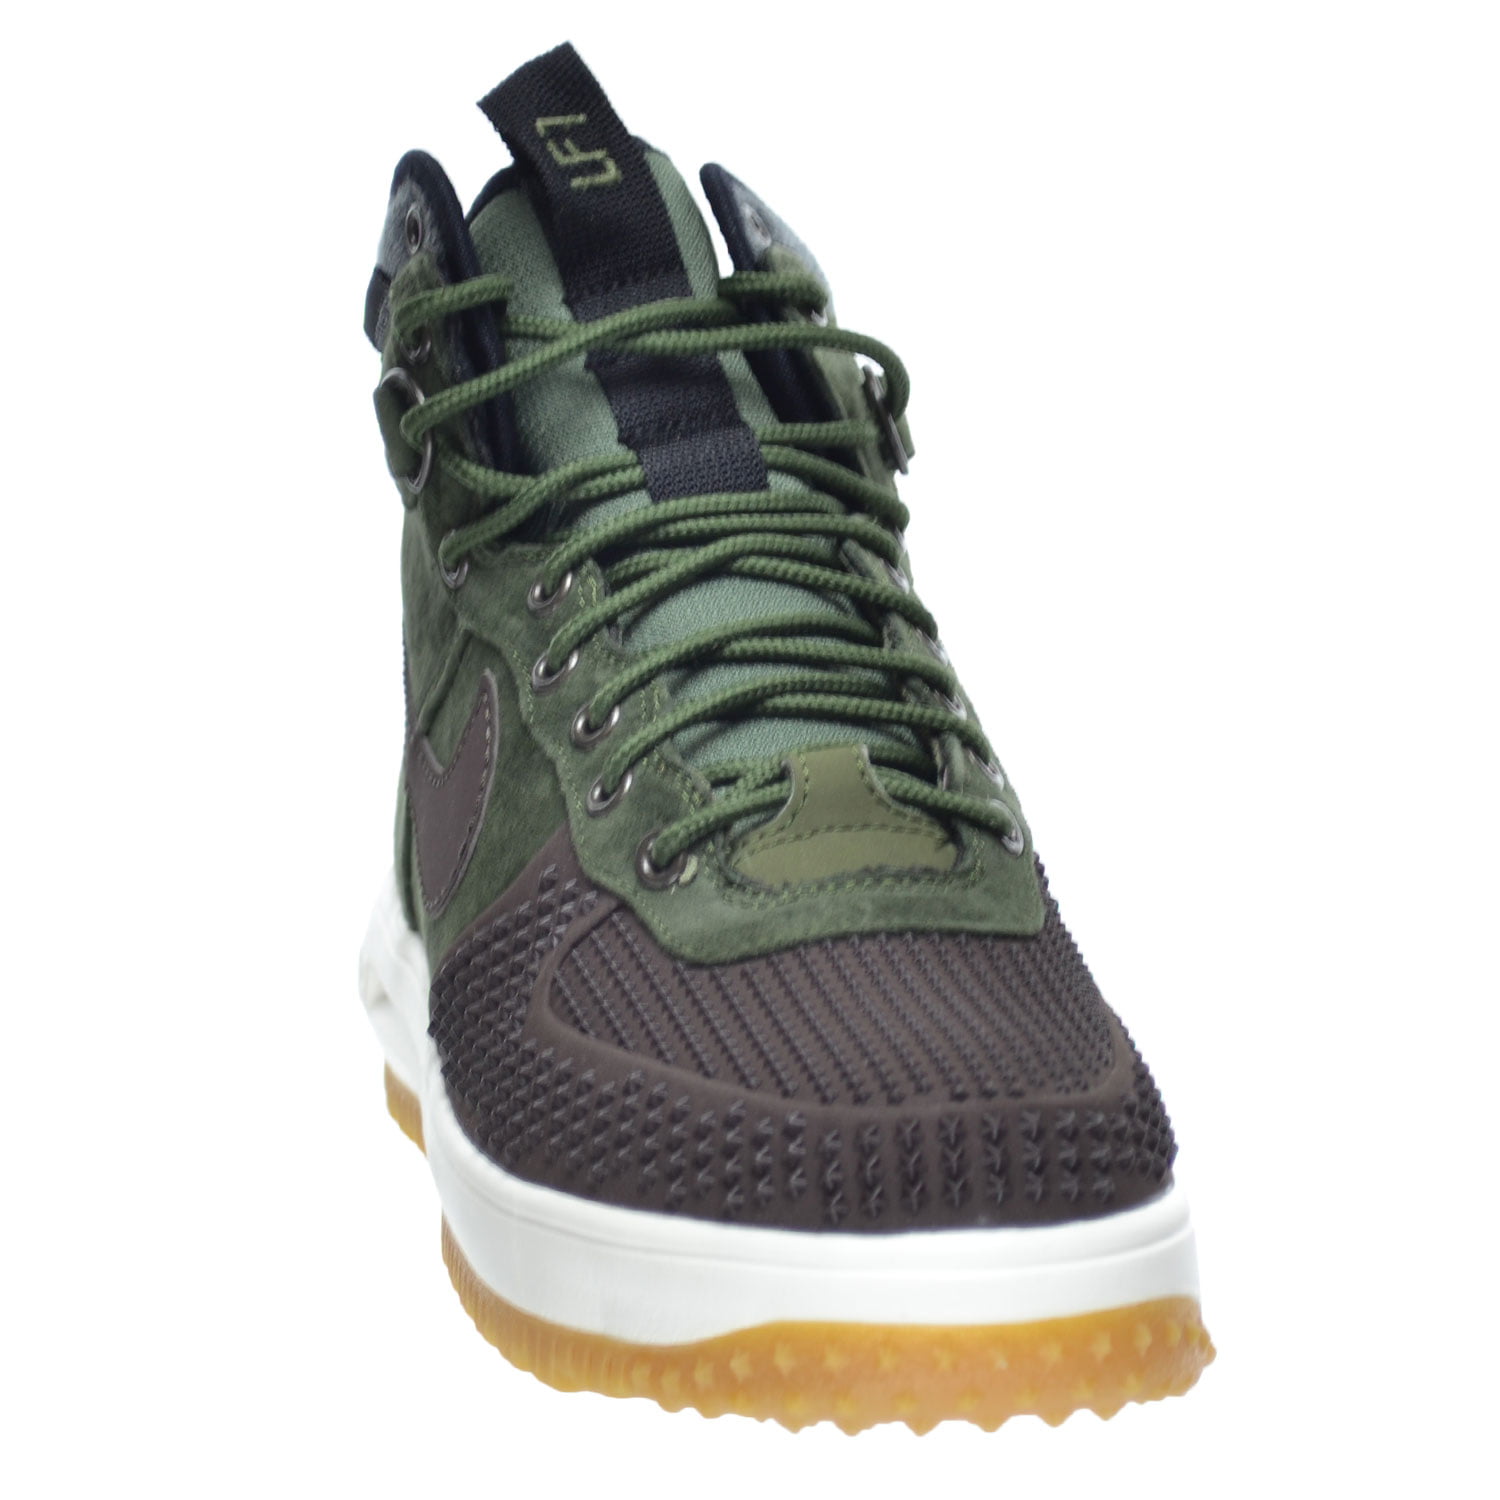 . mostrar Emulación Nike Lunar Force 1 Duckboot Men's Shoes Baroque Brown/Army Olive-Black-Sliver805899-200  (9.5 D(M) US) - Walmart.com